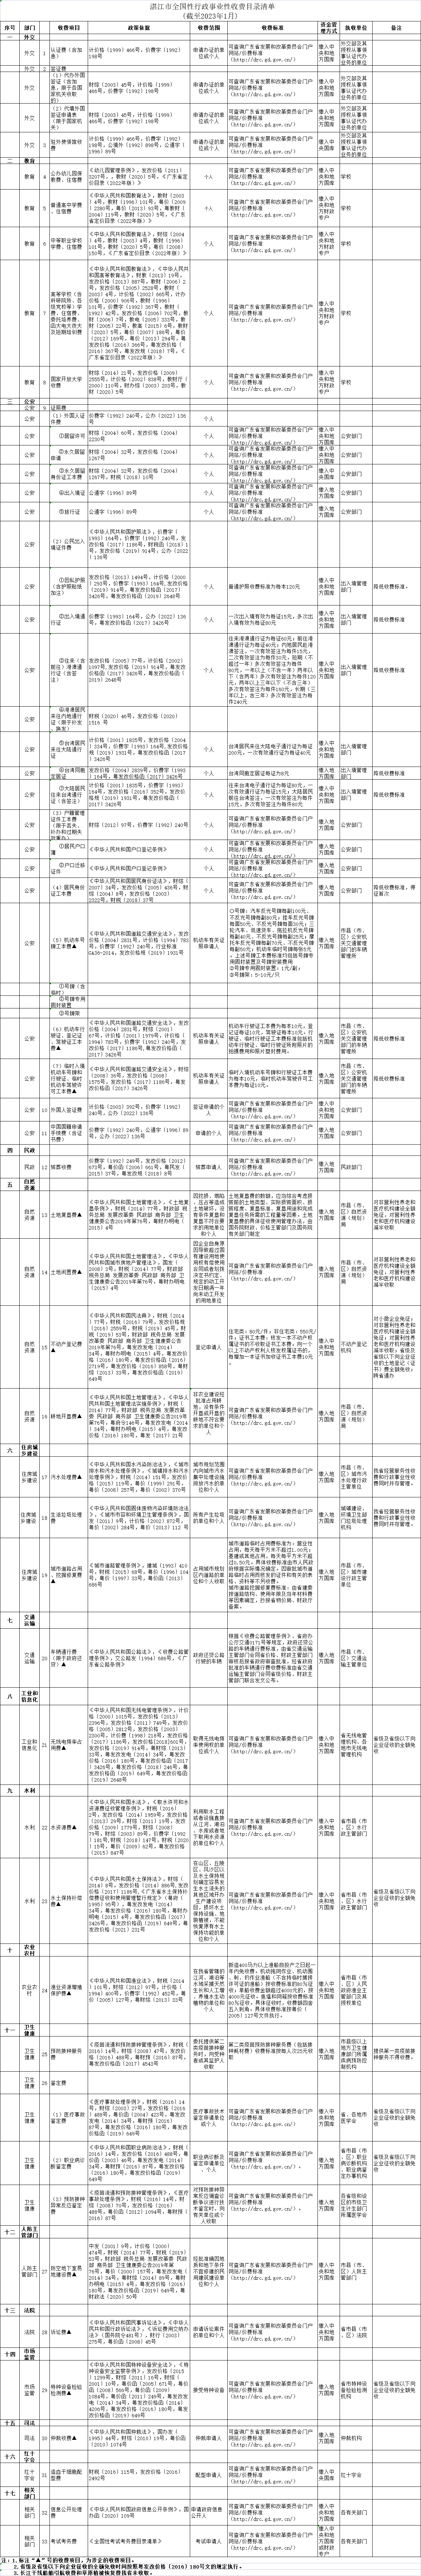 湛江市全国性行政事业性收费目录清单 (截至2023年1月) .png